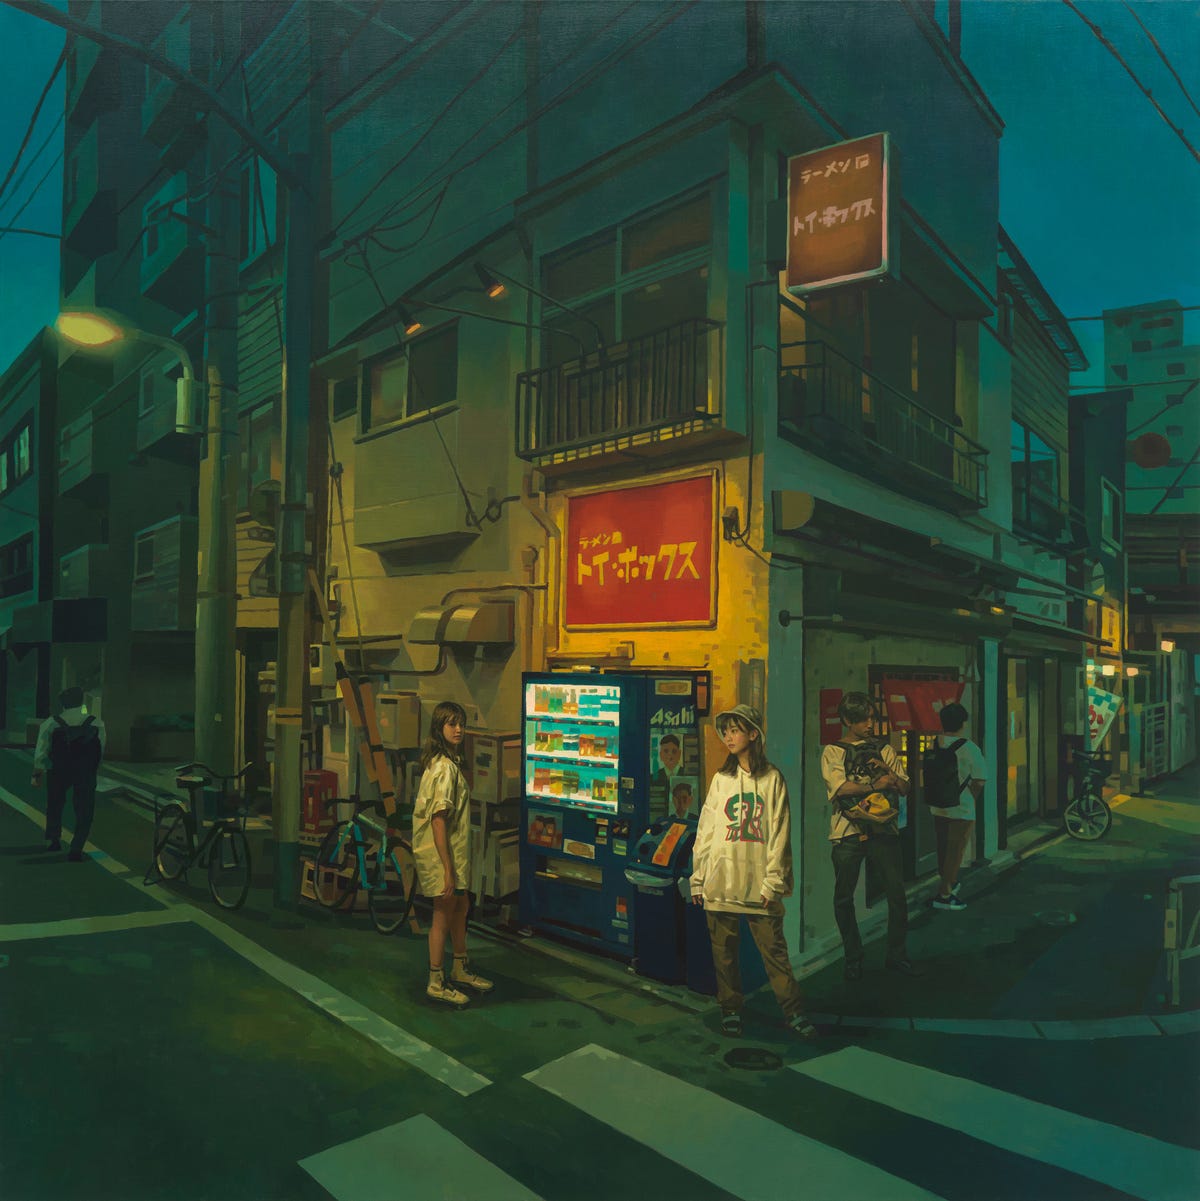 In Between Shadows by Keita Morimoto